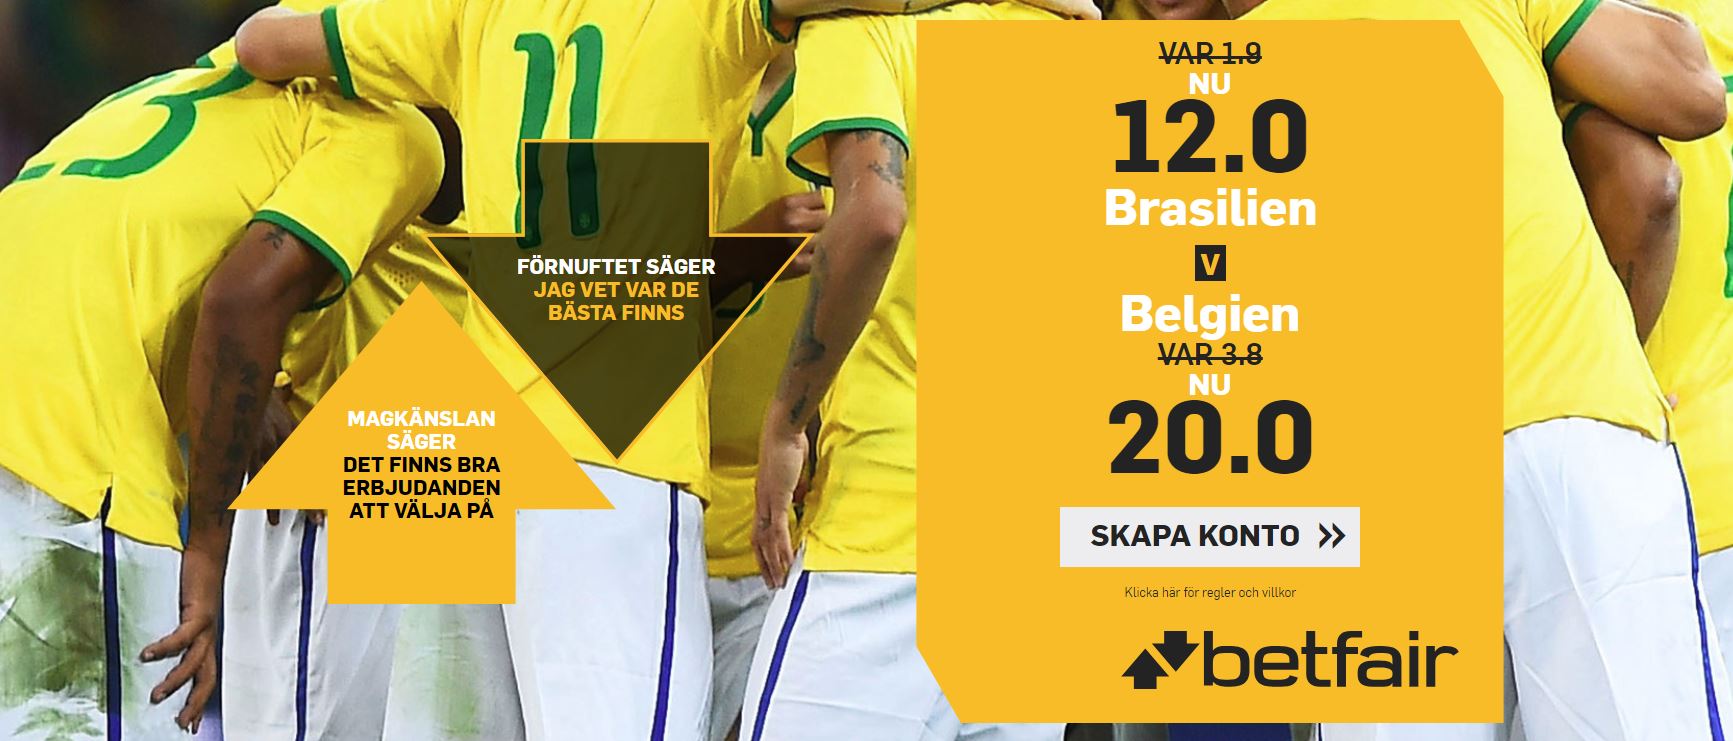 Brasilien Belgien Kampanj Betfair